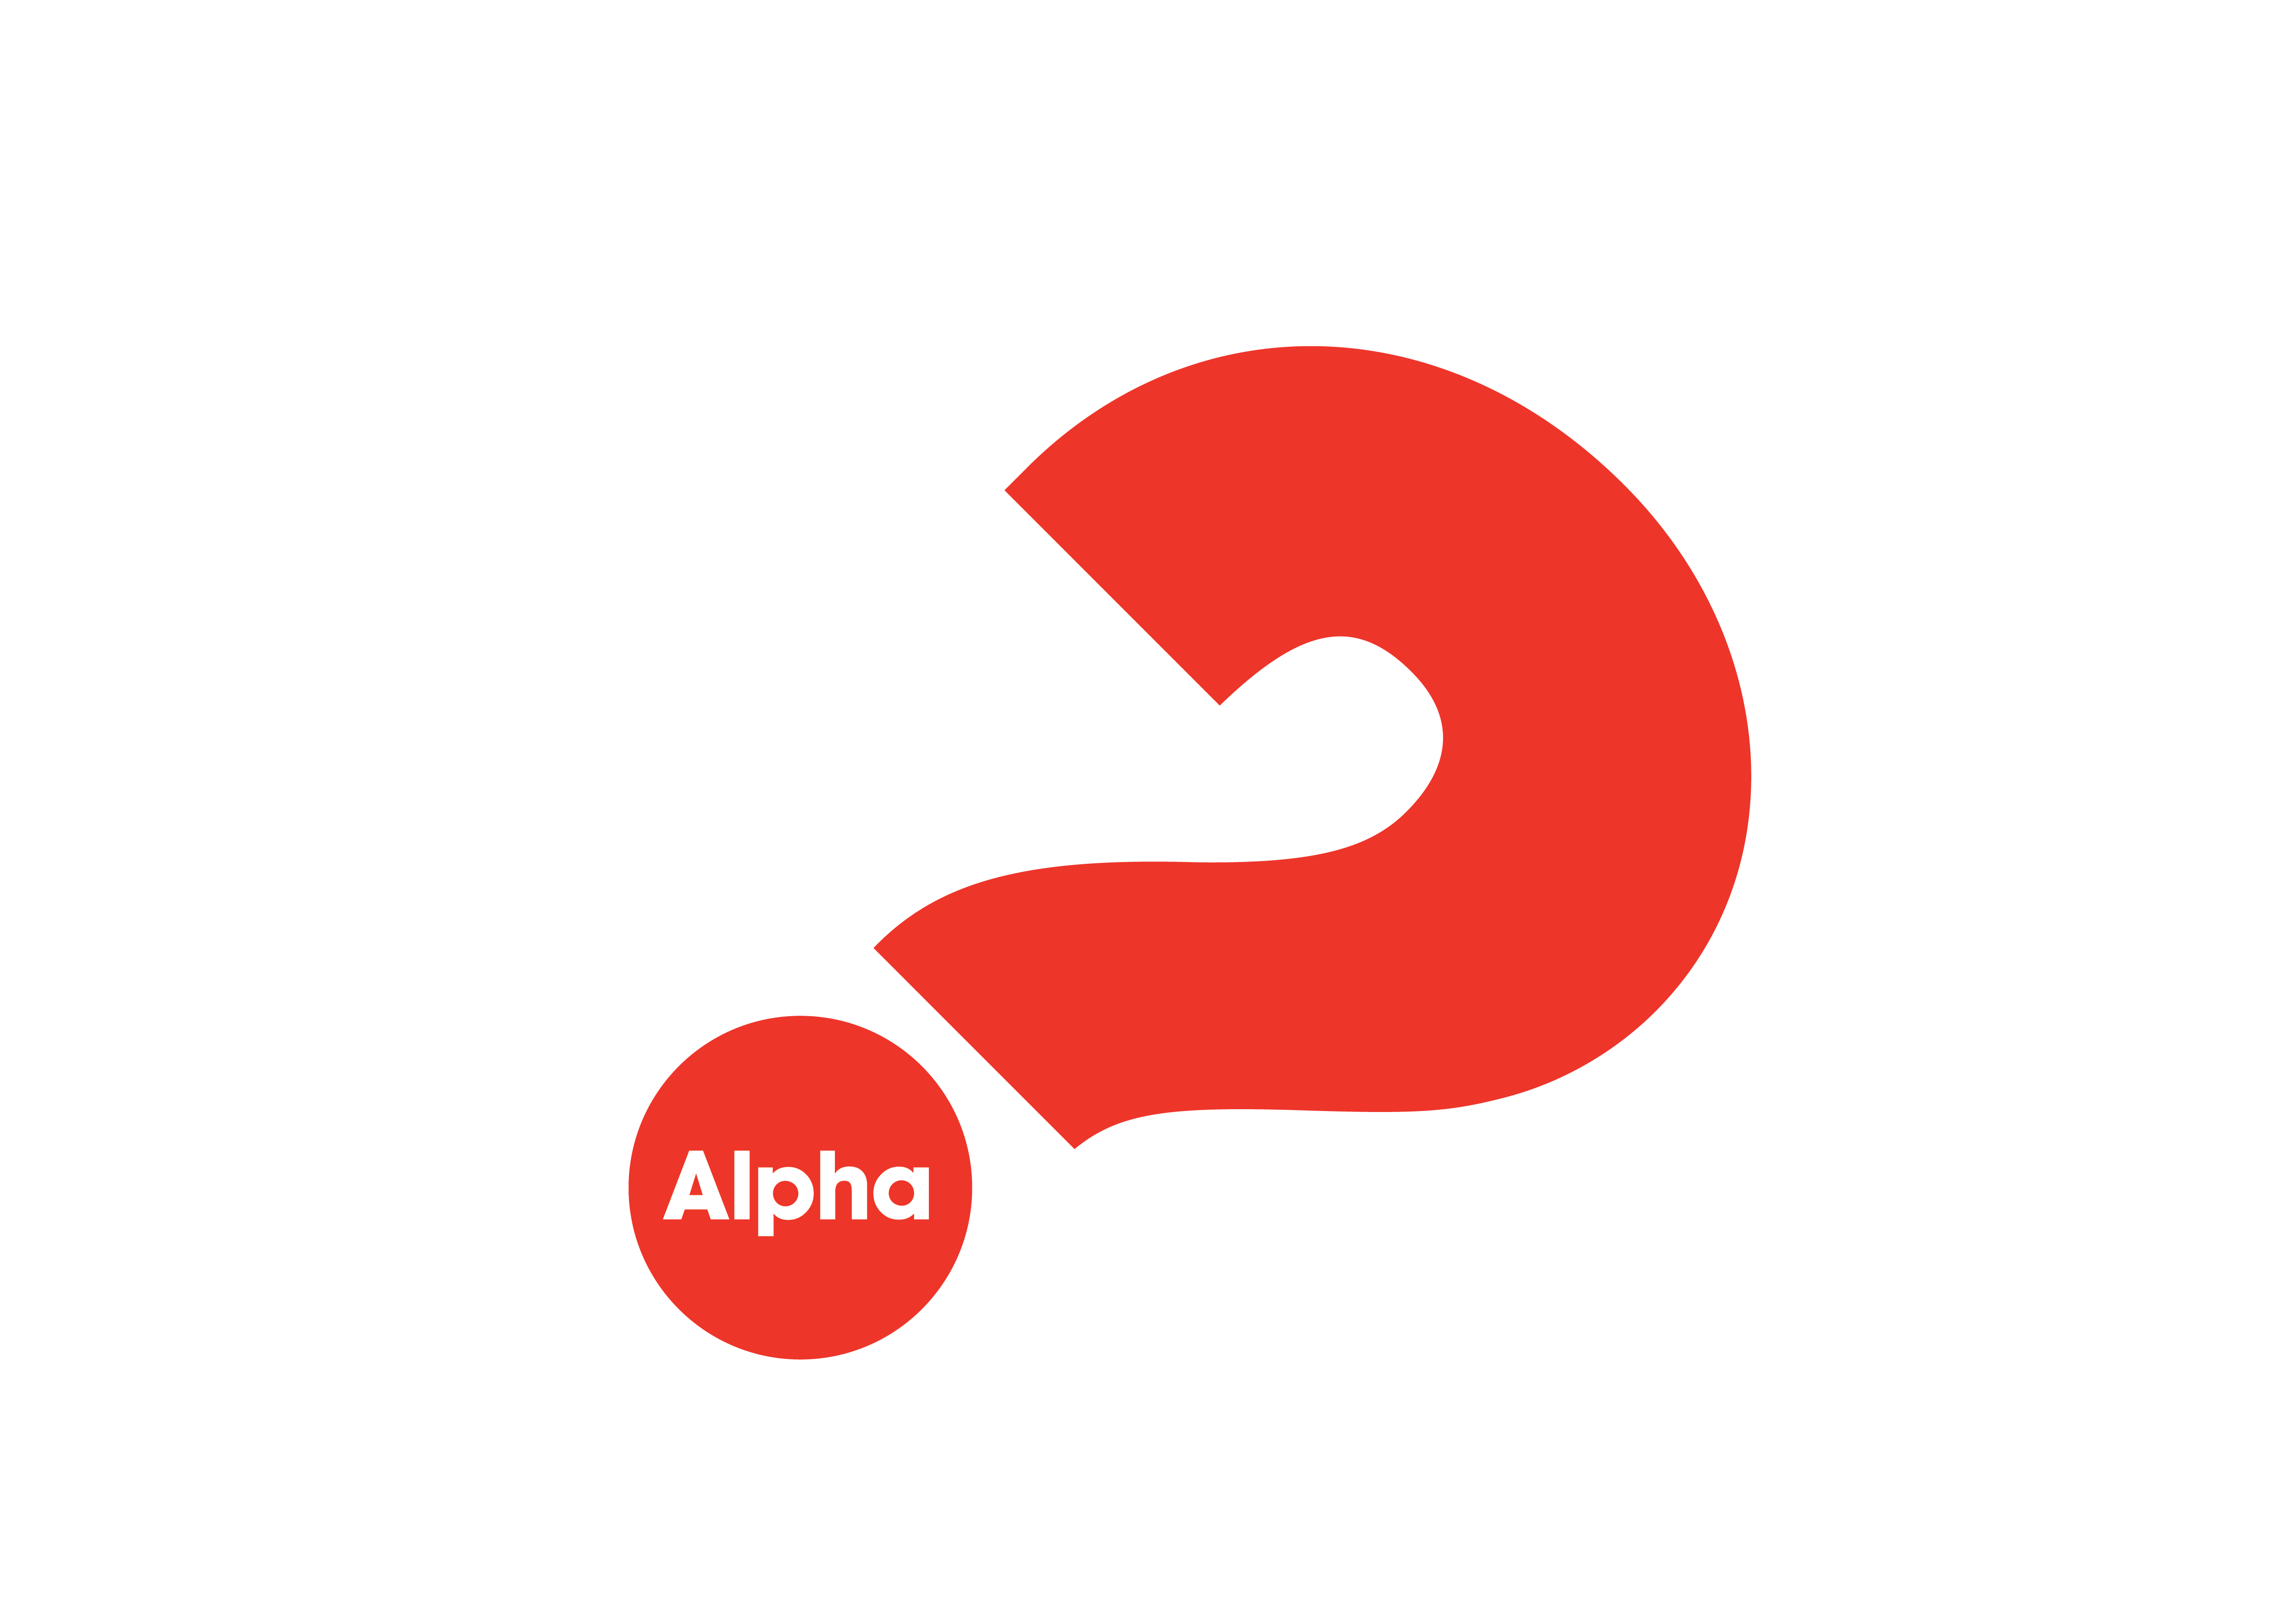 Bilden föreställer Alphas logotype - ett rött lutande frågetecken